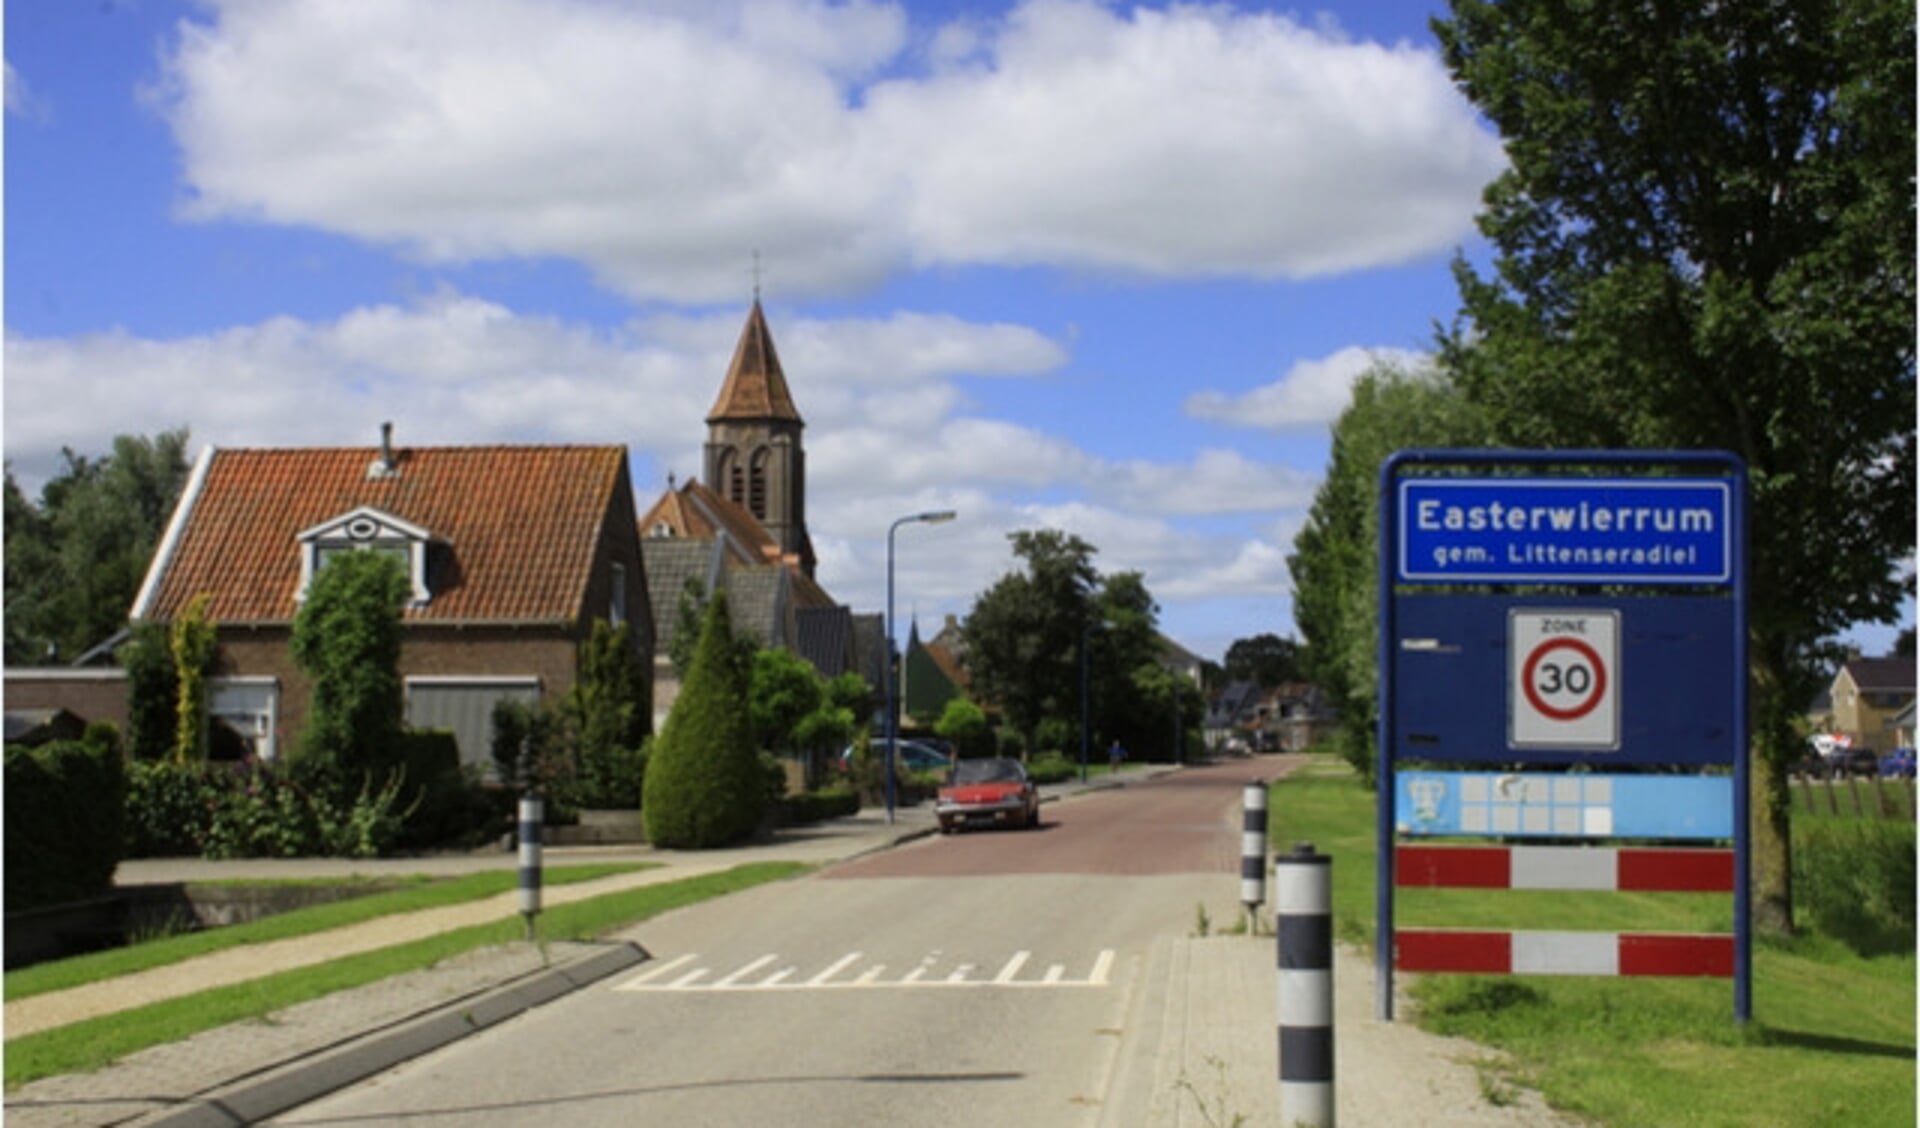 De katholieke kerk van Easterwierrum, met de rode toren bij de entree van het dorp, is een voorbeeld van een kerk die nu privébezit is.